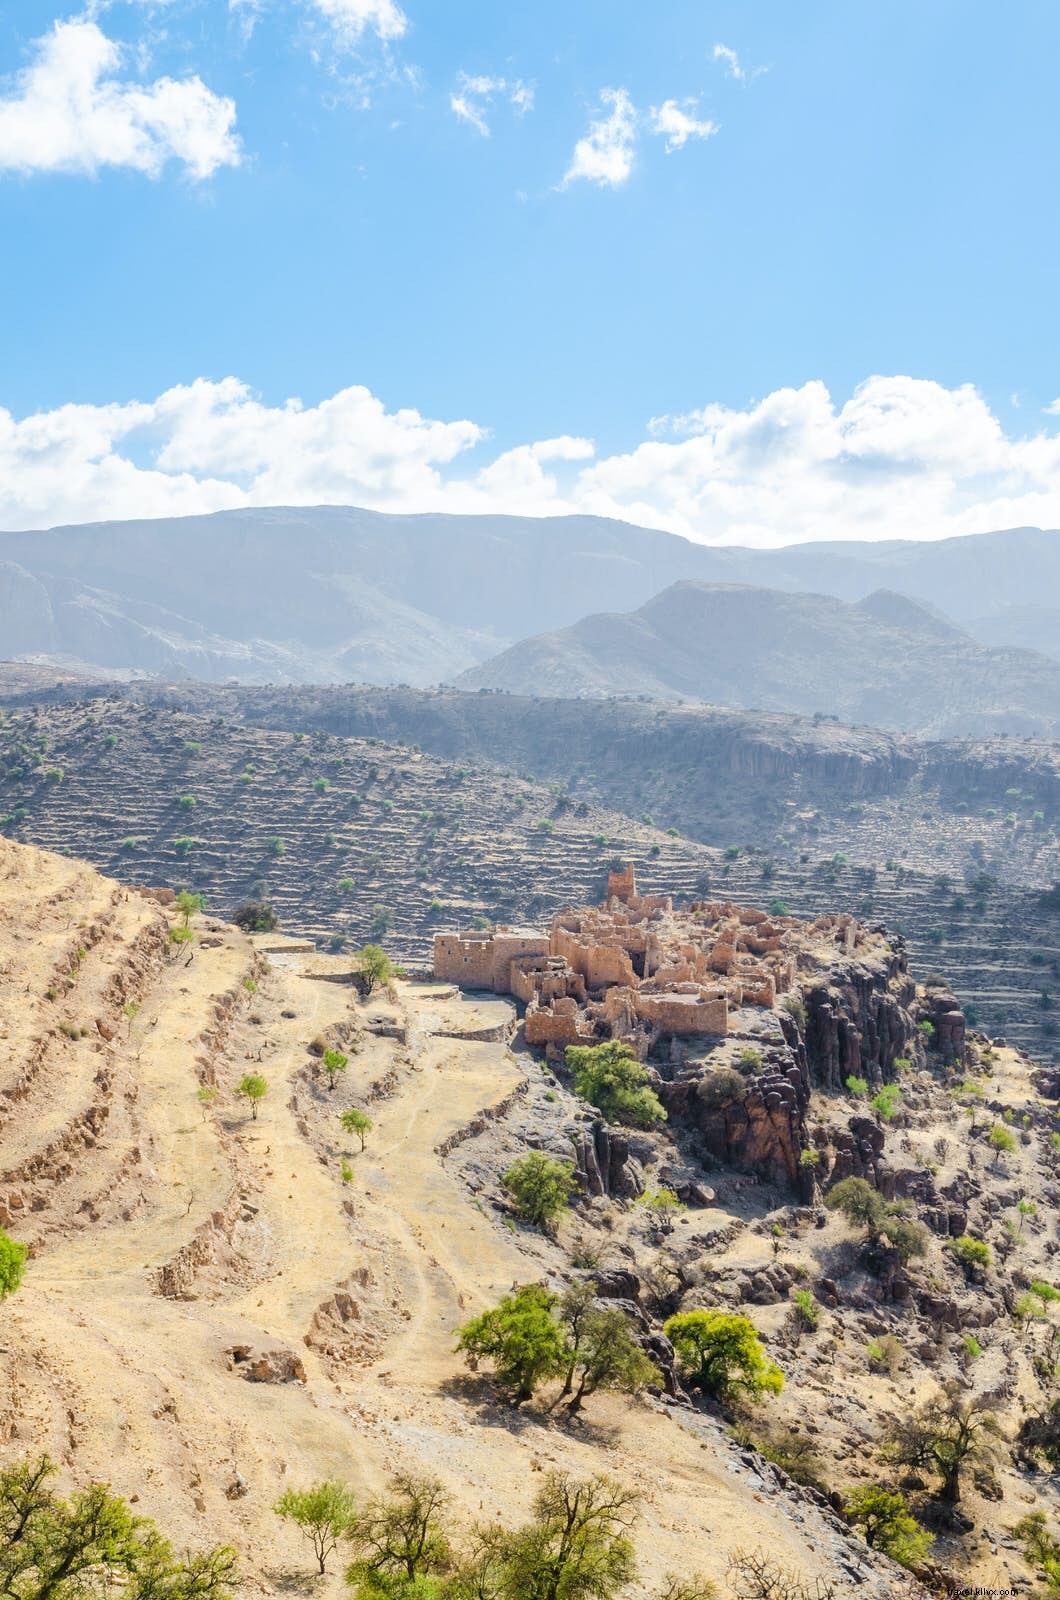 Caminhando pelas montanhas selvagens inexploradas de Marrocos 